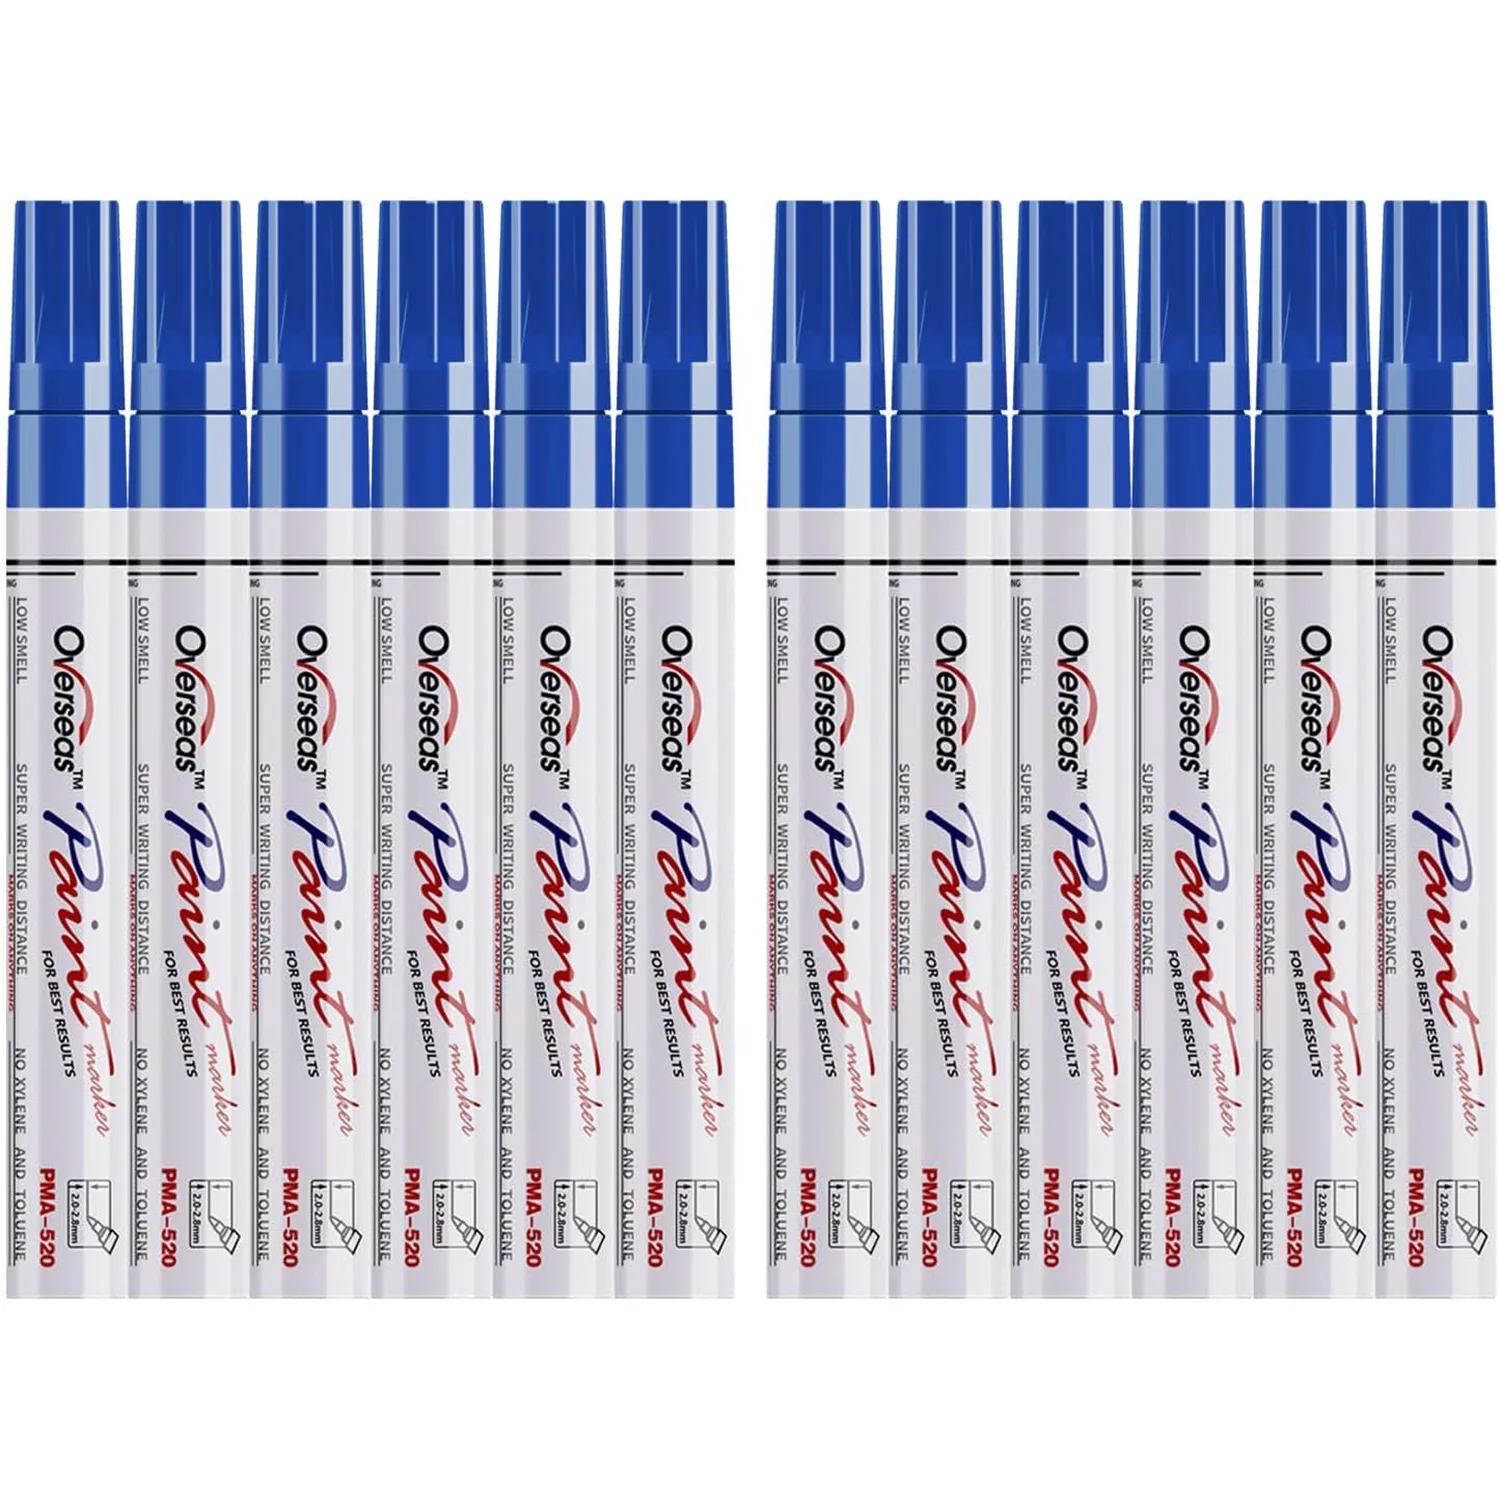 

Краска синяя ручки краски маркеры для краски 12 упаковок водостойкая масляная краска ручка набор быстросохнущая и постоянная, маркеры для к...